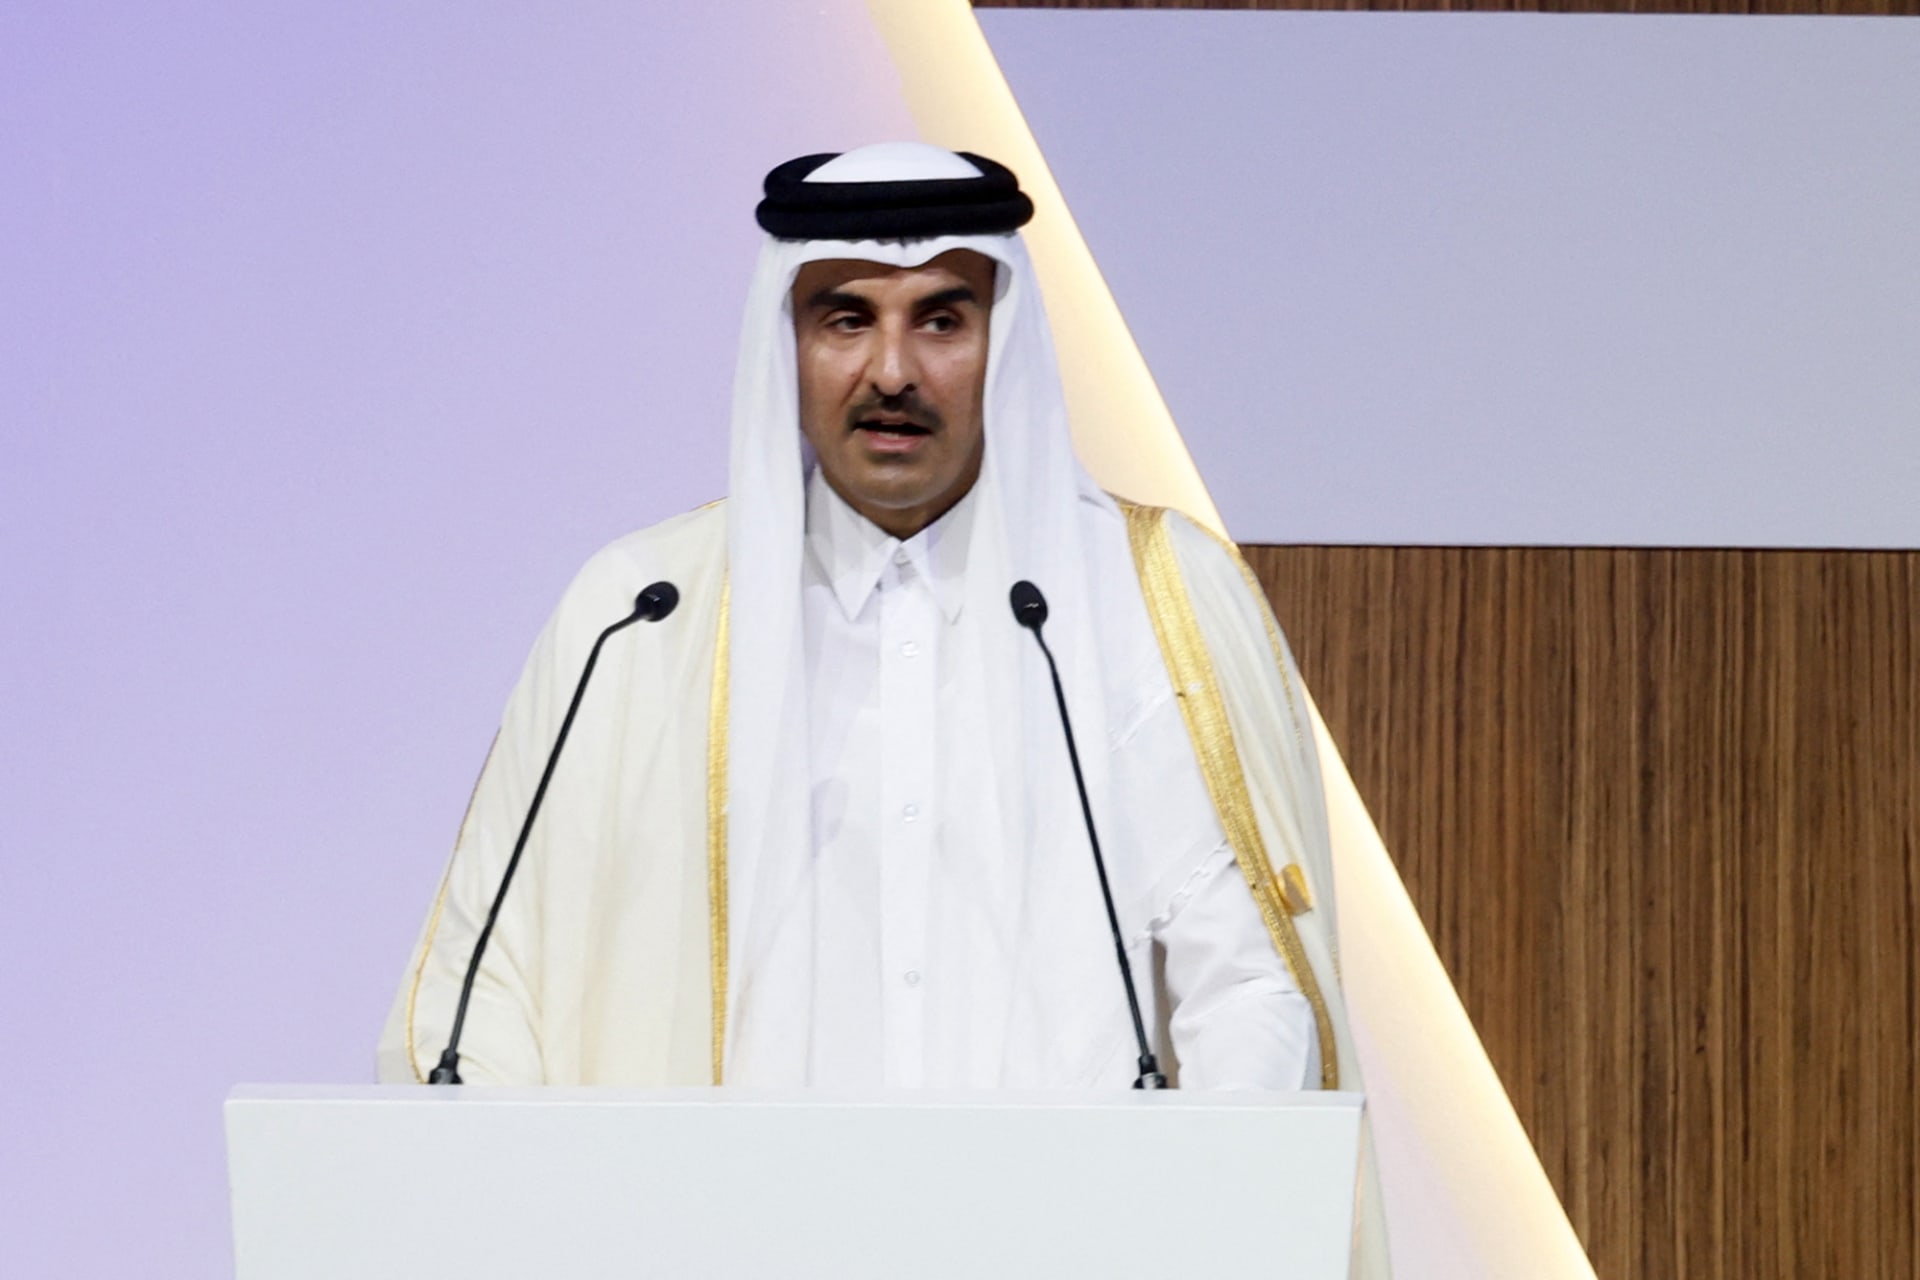 أمير قطر ونائبه ورئيس الوزراء يعزون الرئيس الإماراتي بوفاة الشيخ سعيد بن زايد